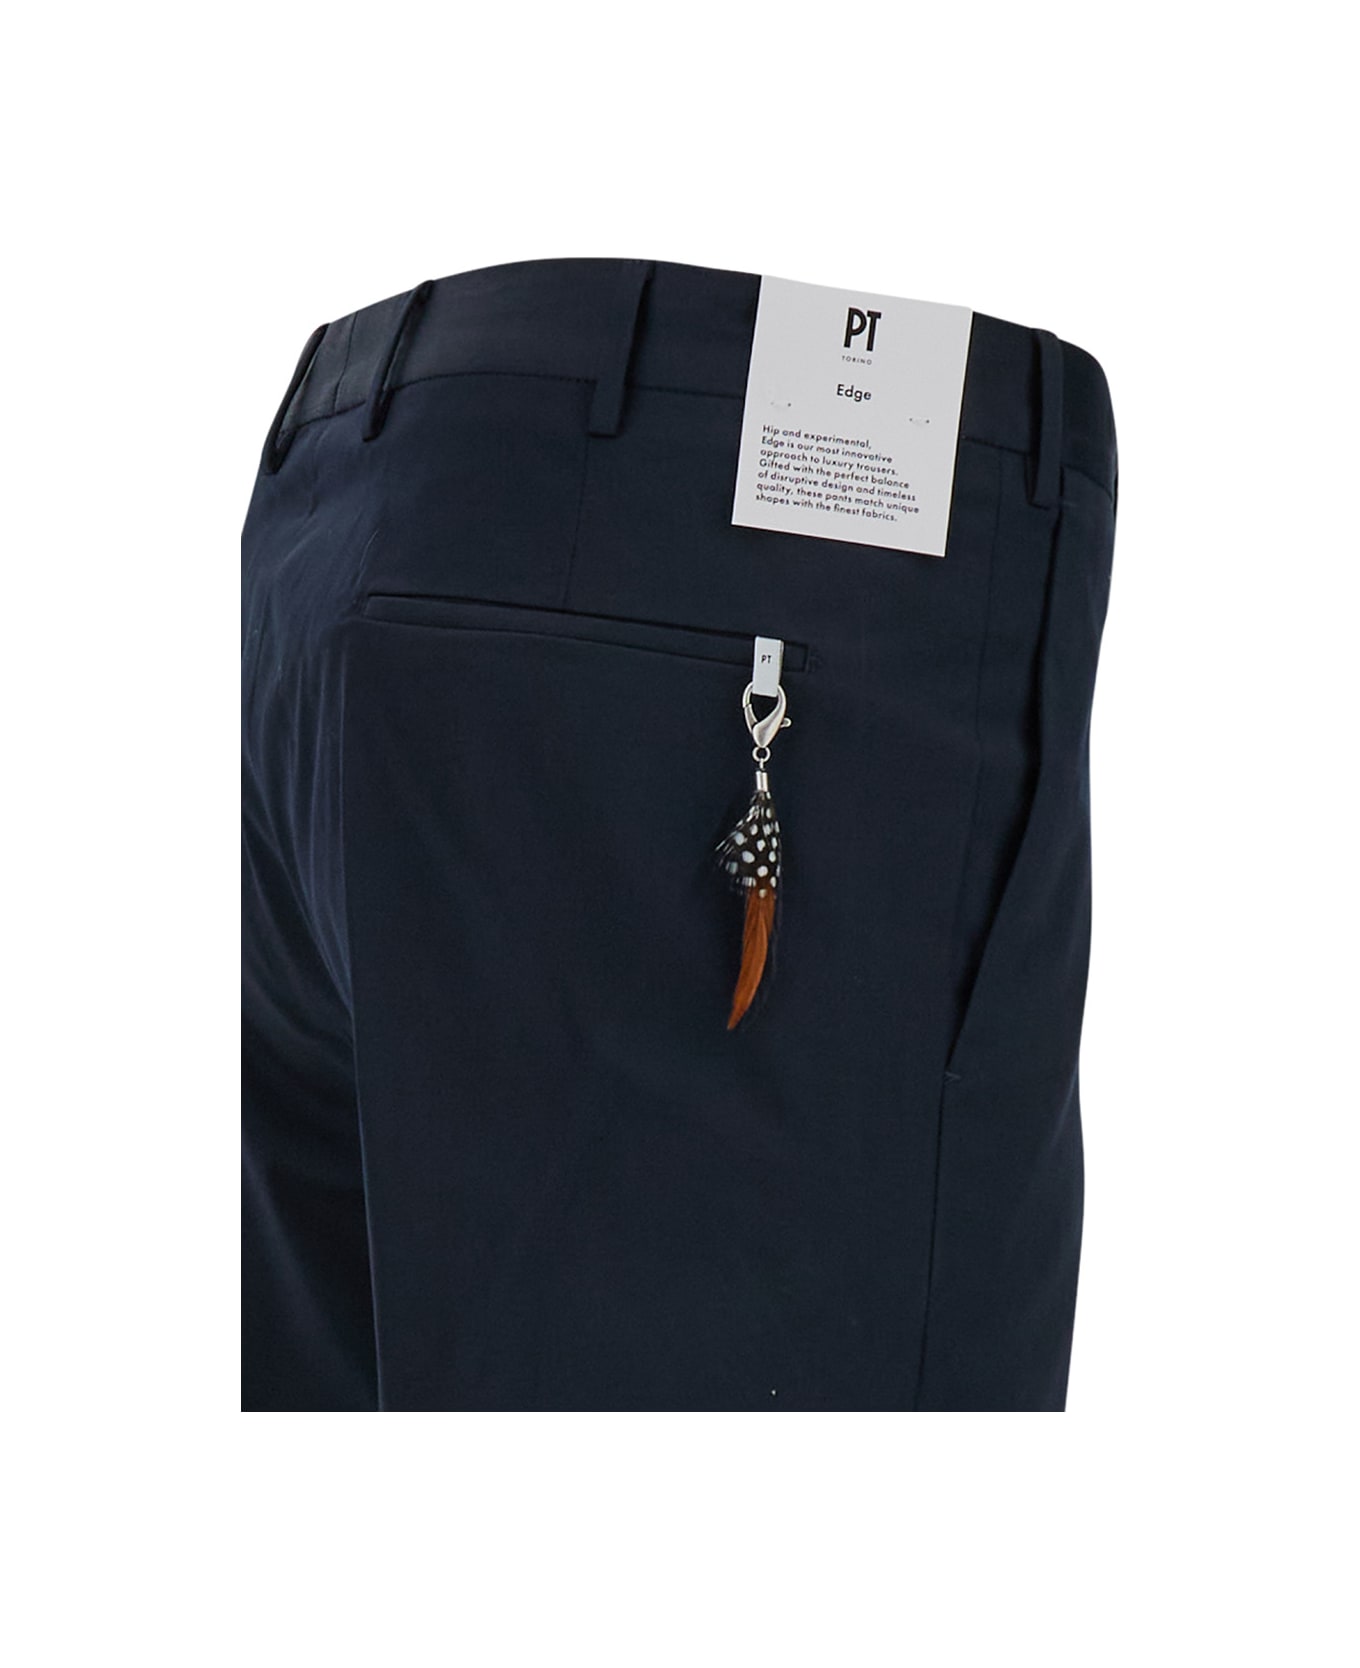 PT01 Blu Slim Fit Trousers In Cotton Blend Man - Blu